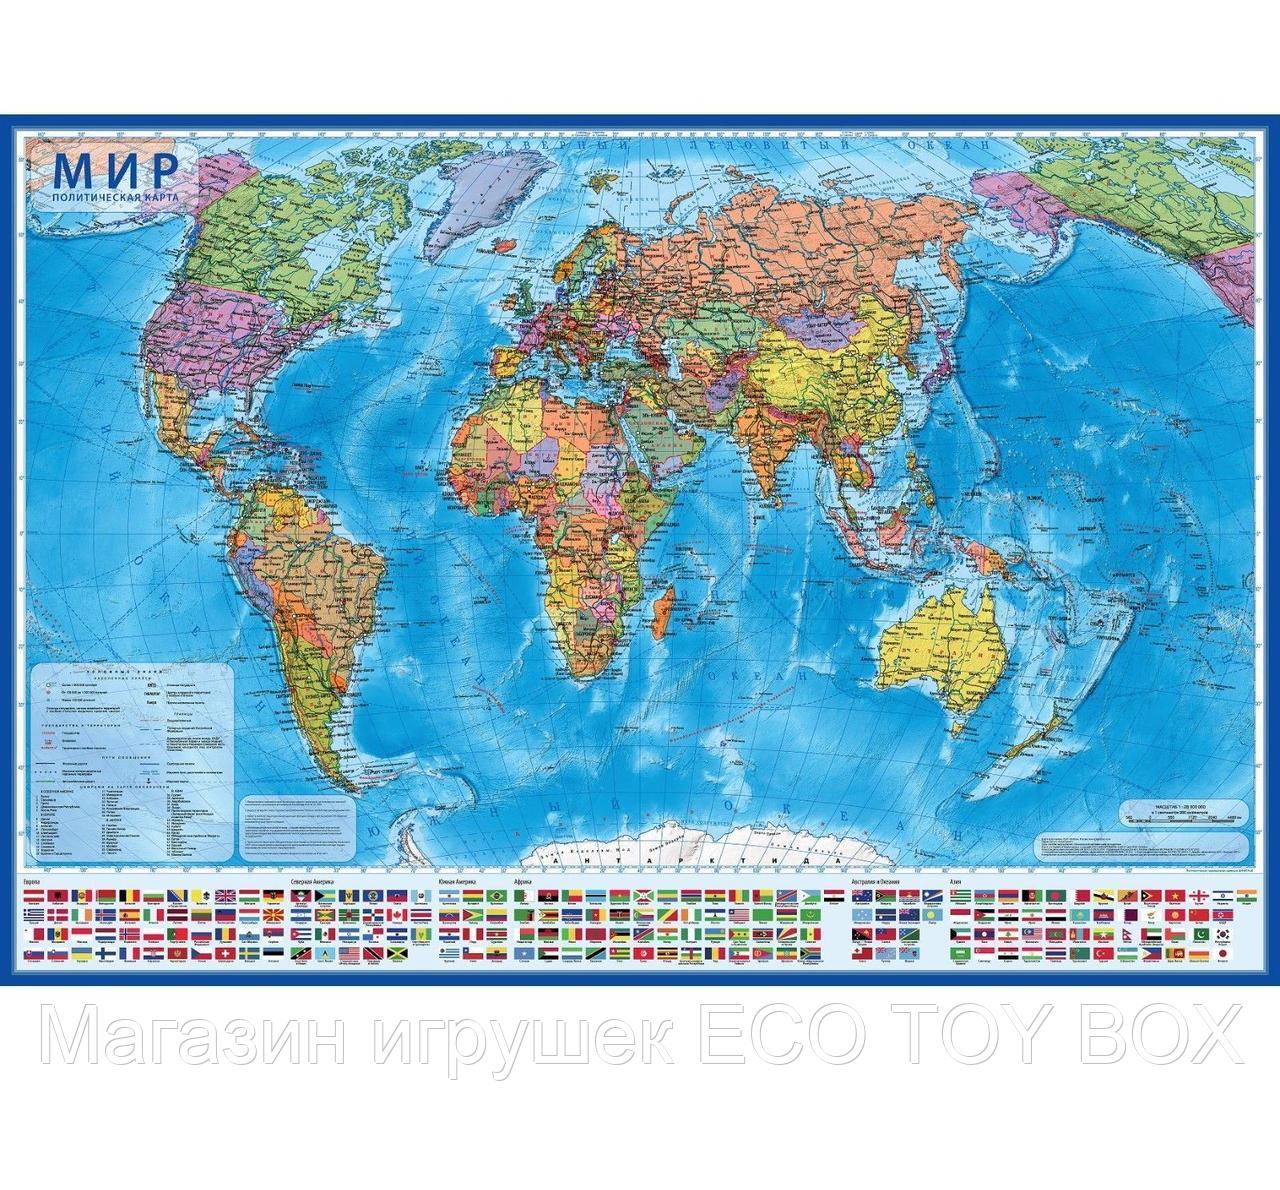 Интерактивная географическая карта мира политическая, 101 х 66 см, 1:32 М, фото 1